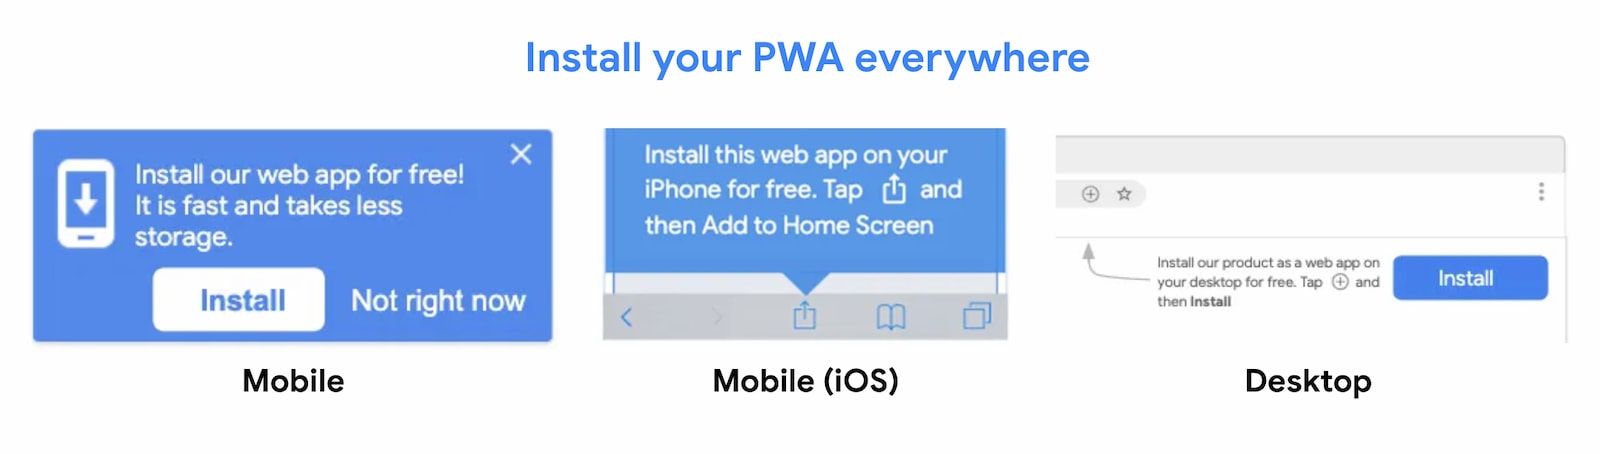 אפשר להתקין אפליקציות PWA בכל מקום.